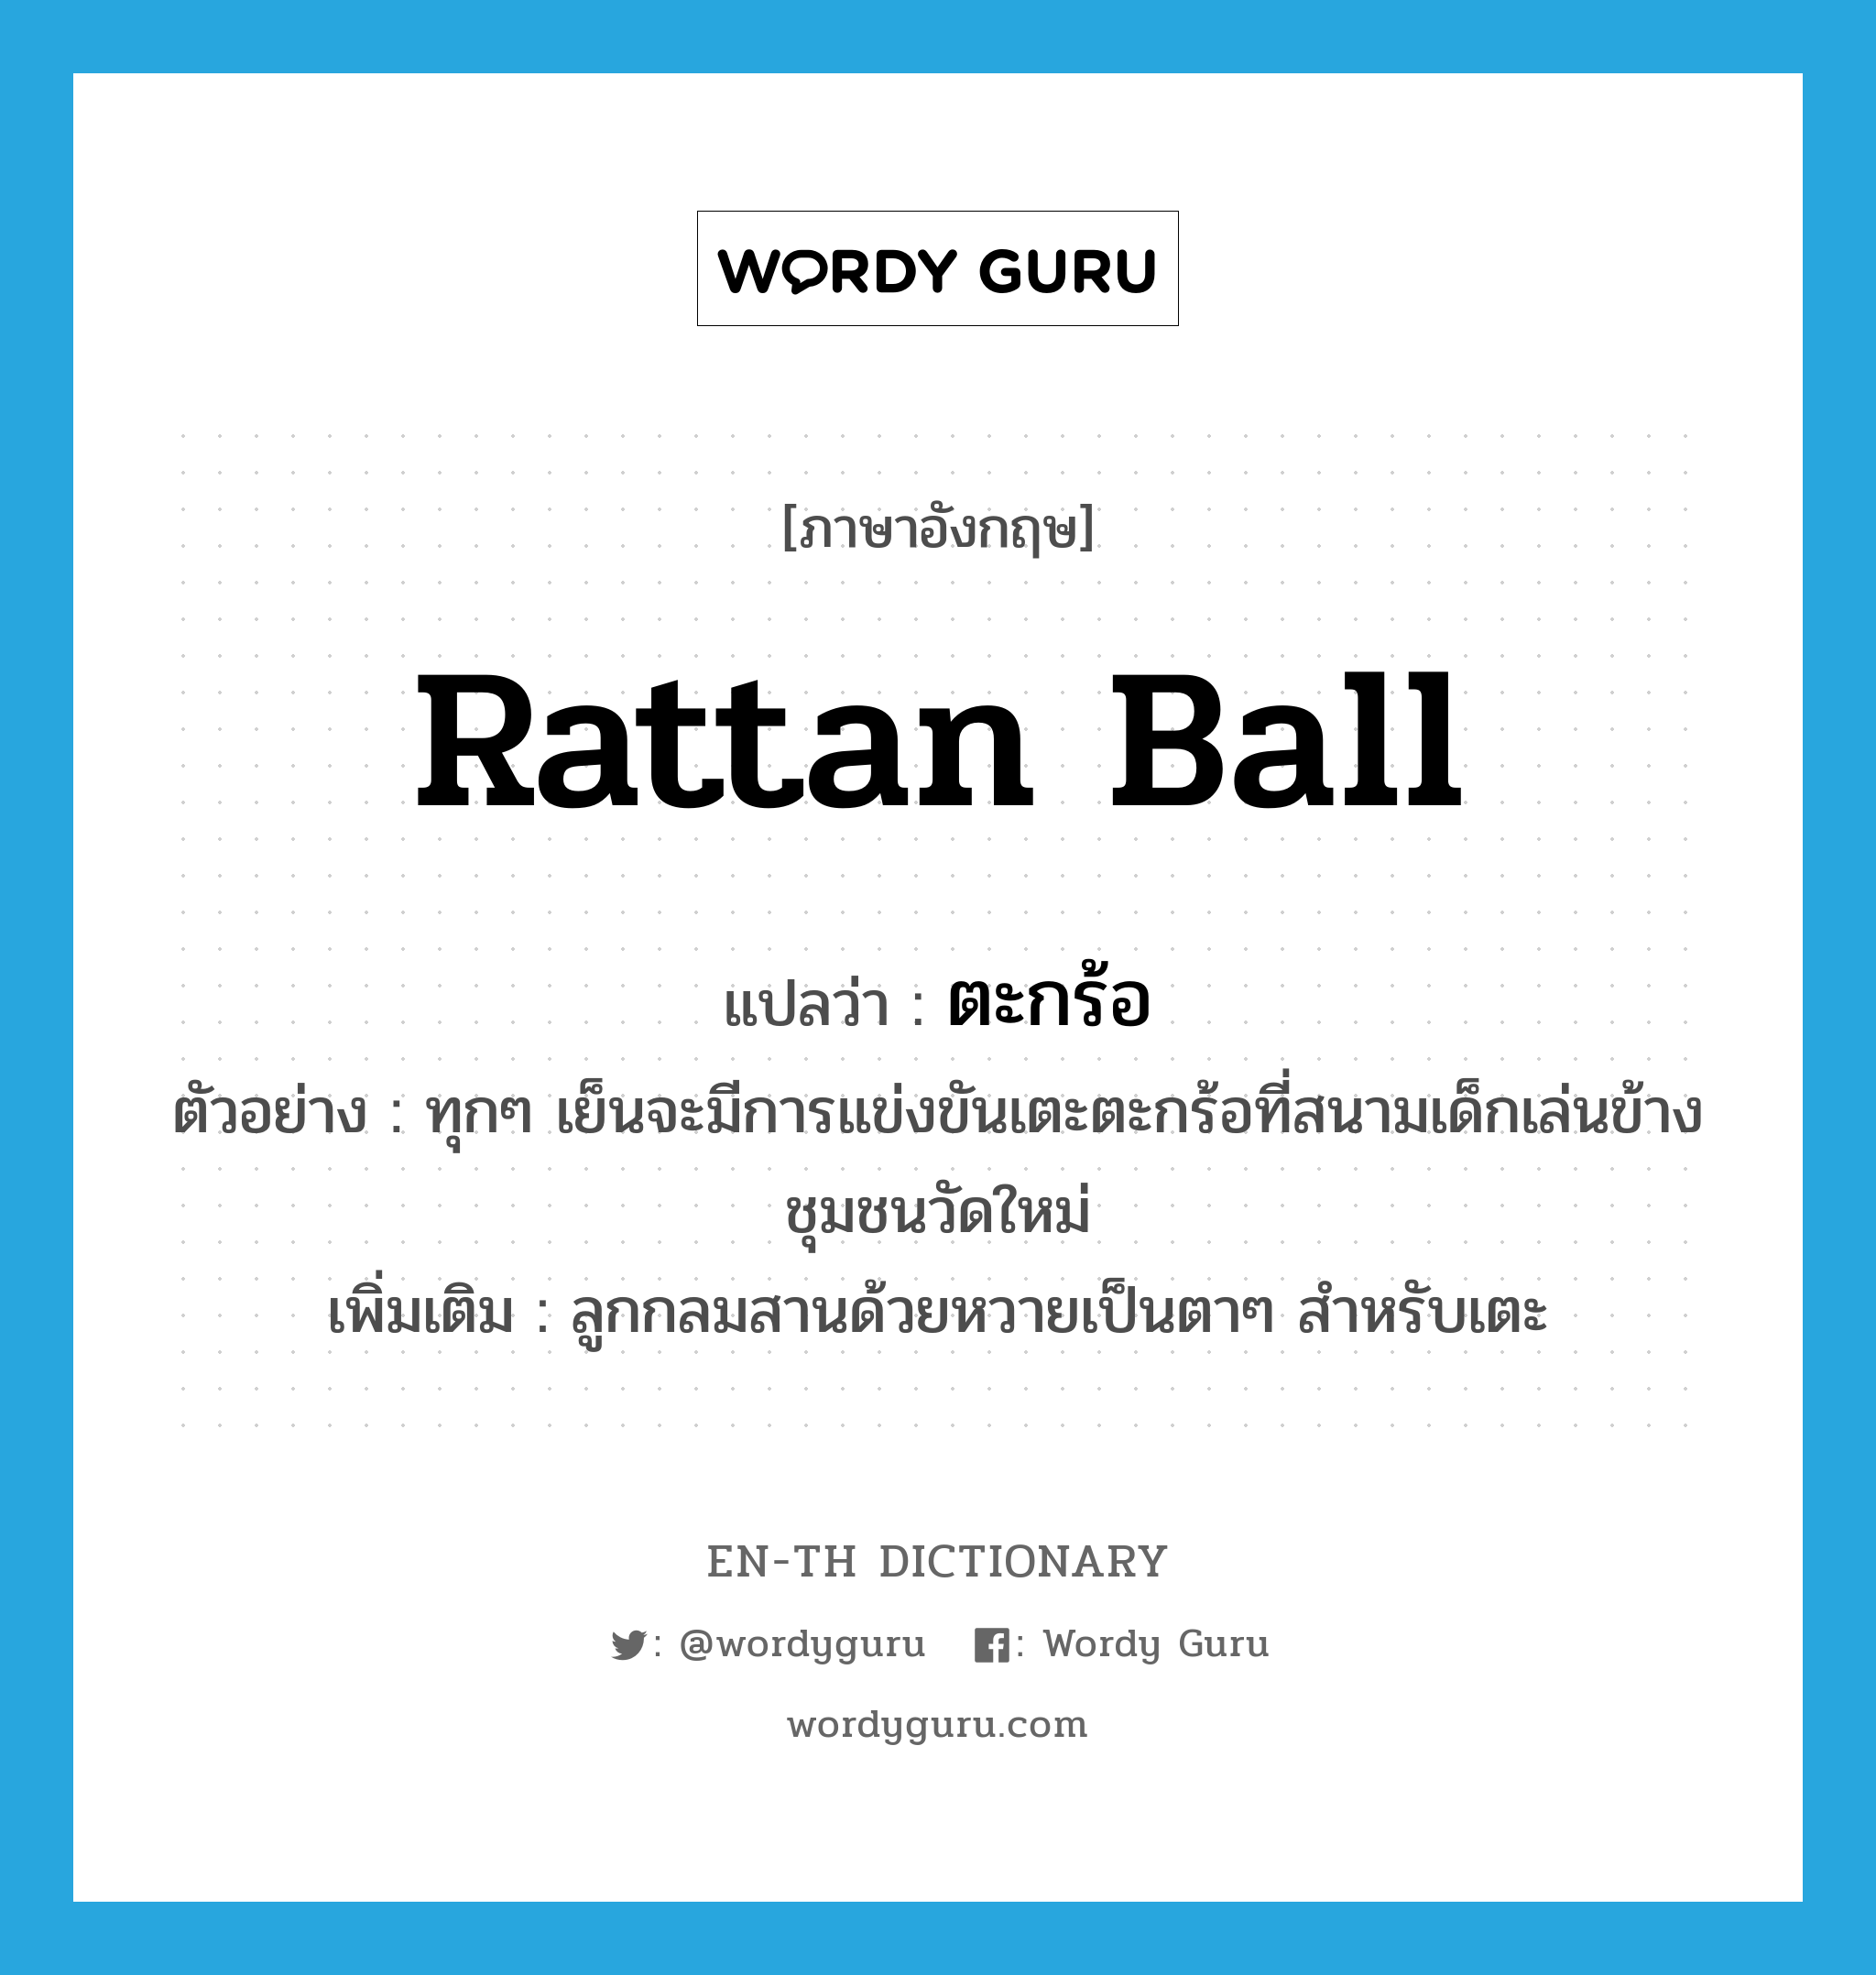 rattan ball แปลว่า?, คำศัพท์ภาษาอังกฤษ rattan ball แปลว่า ตะกร้อ ประเภท N ตัวอย่าง ทุกๆ เย็นจะมีการแข่งขันเตะตะกร้อที่สนามเด็กเล่นข้างชุมชนวัดใหม่ เพิ่มเติม ลูกกลมสานด้วยหวายเป็นตาๆ สำหรับเตะ หมวด N